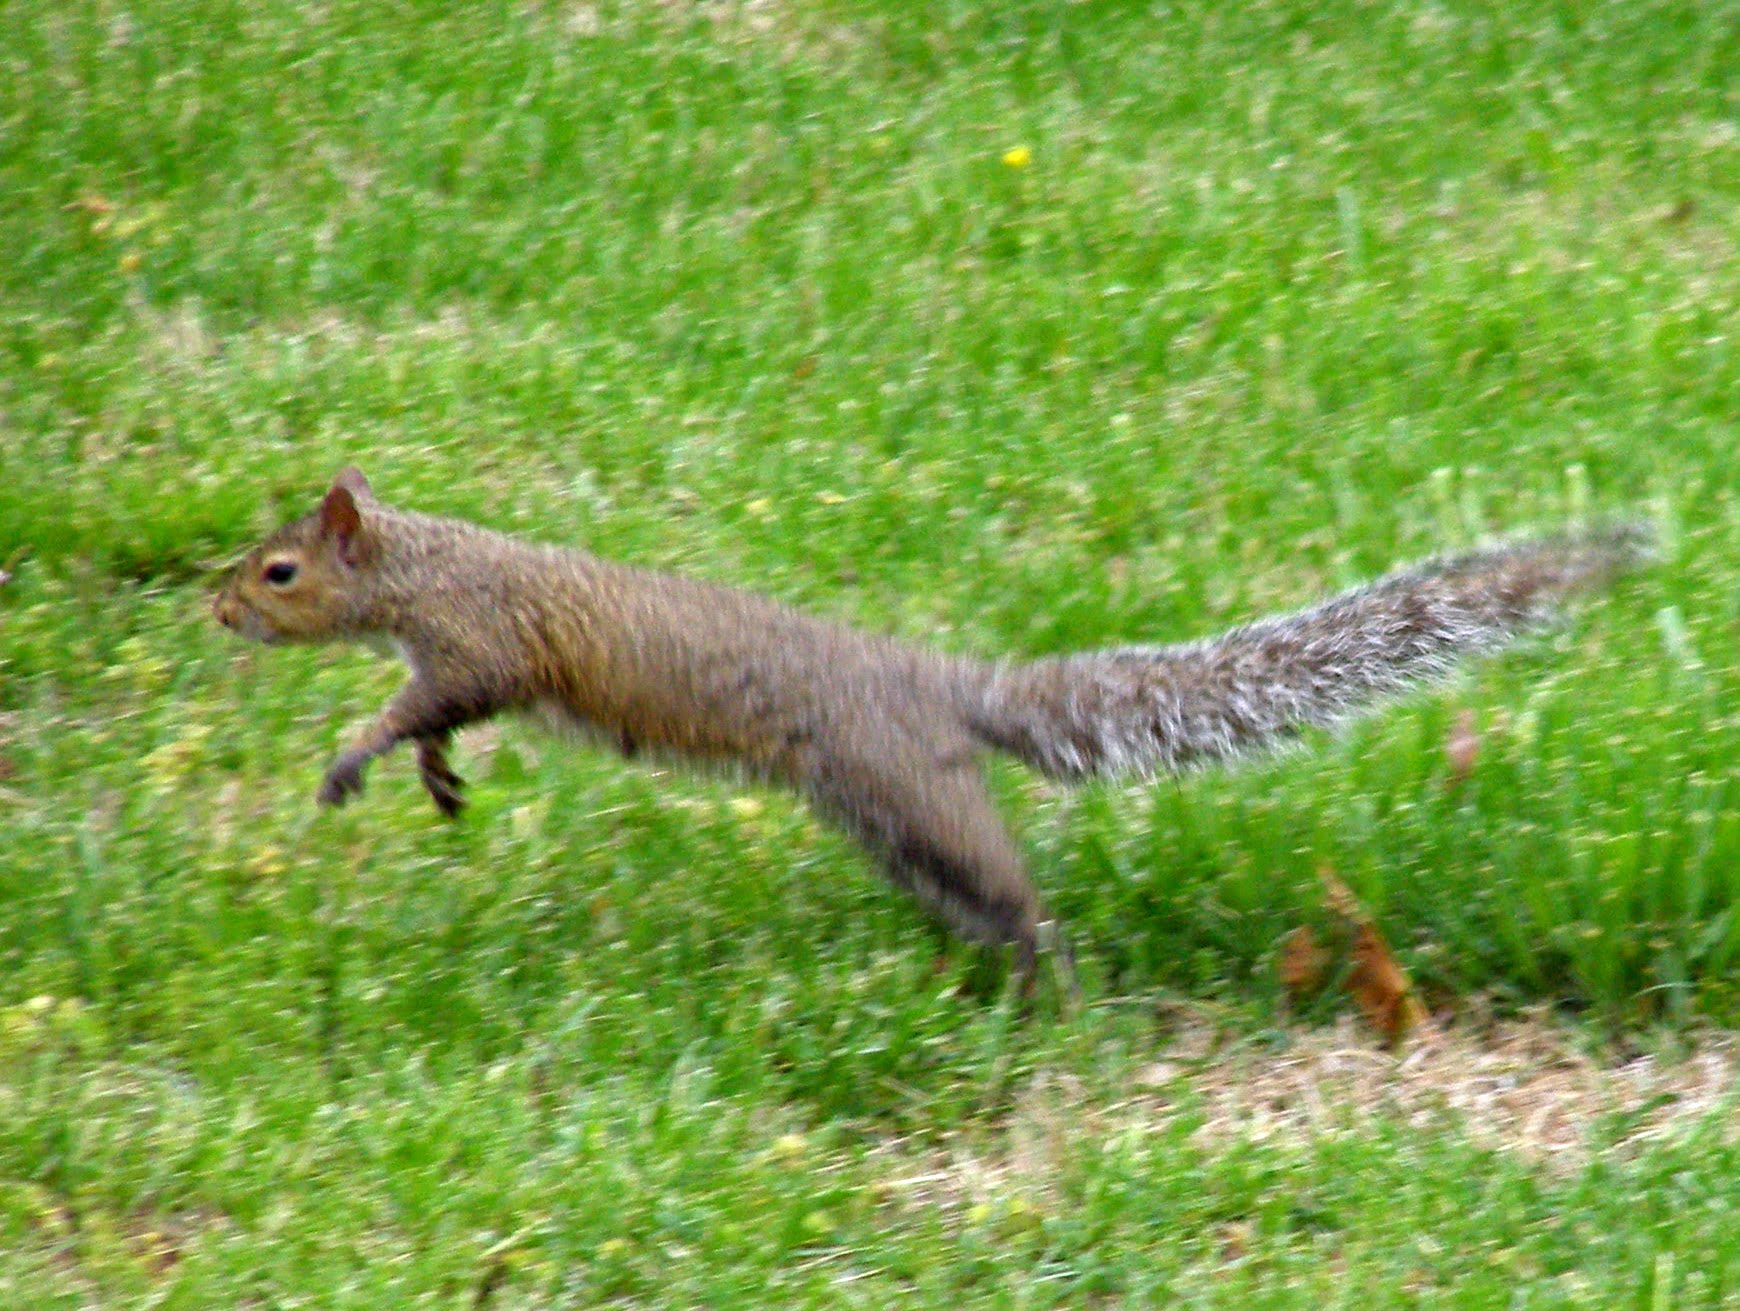 Leaping Squirrel By Morguefile Via Juditu